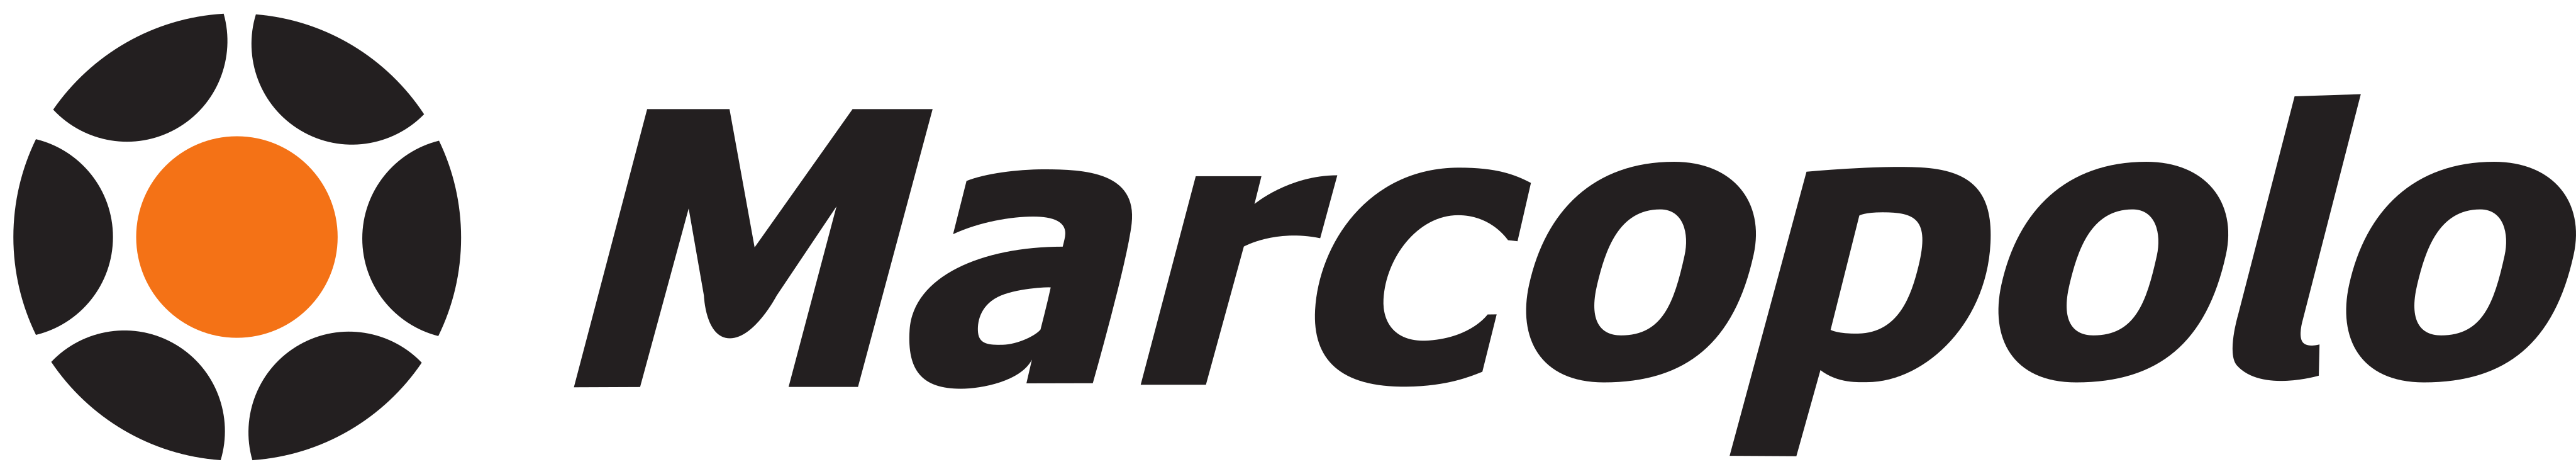 Marcopolo Logo.